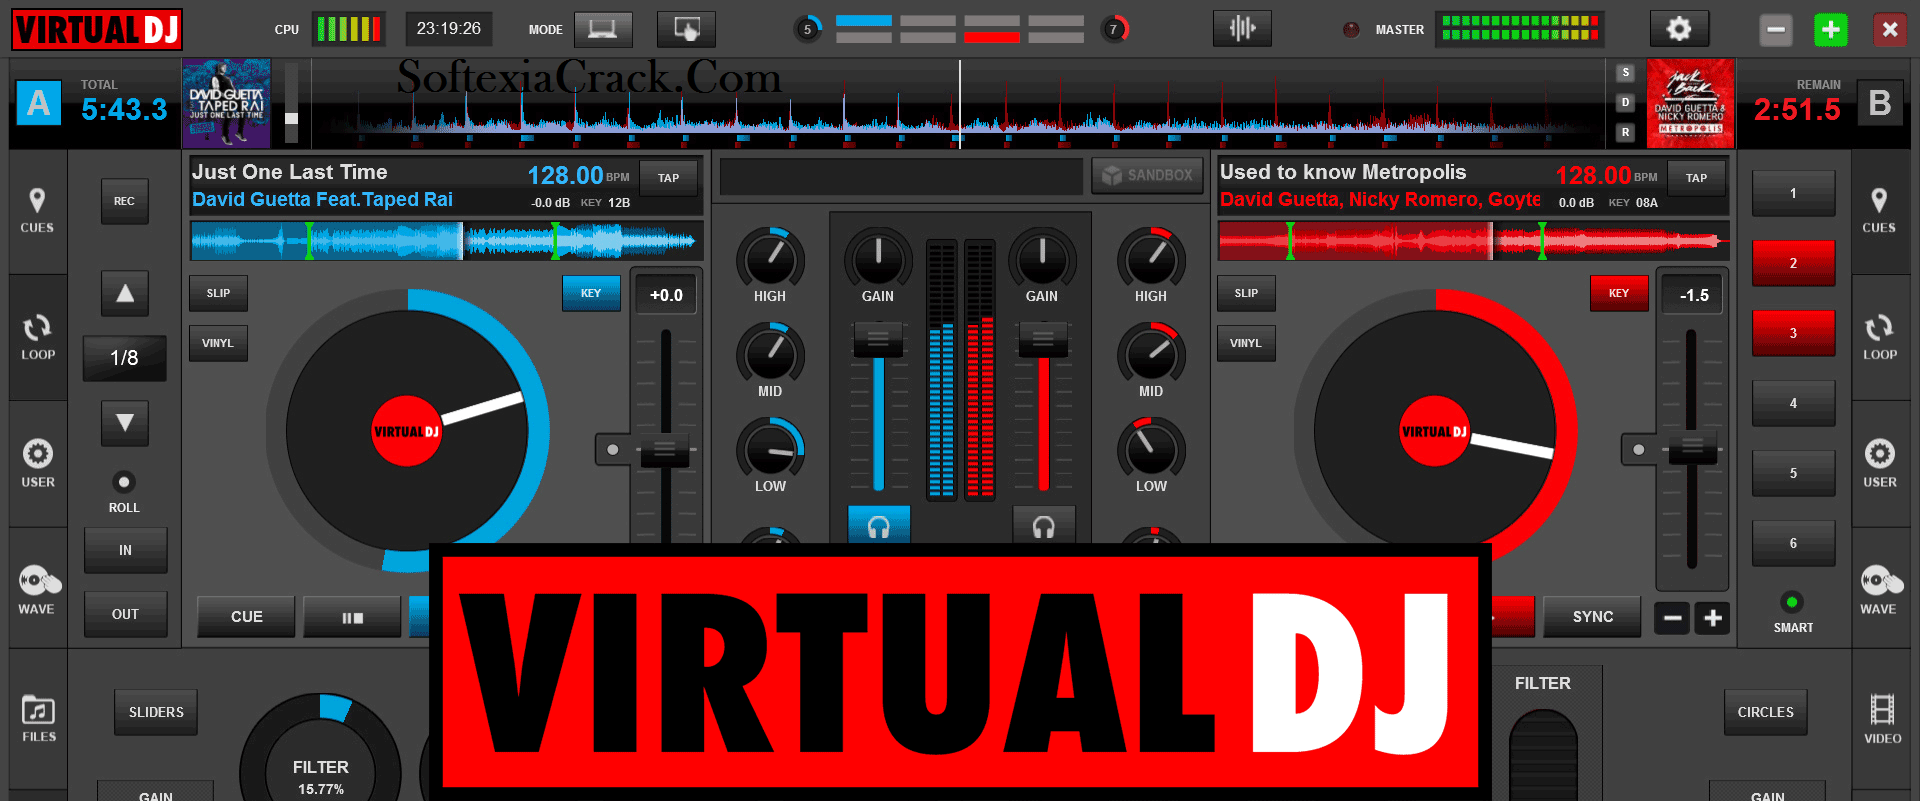 Virtual DJ Pro 8 Crack + Keygen 2021 [Latest] Torrent Free Download